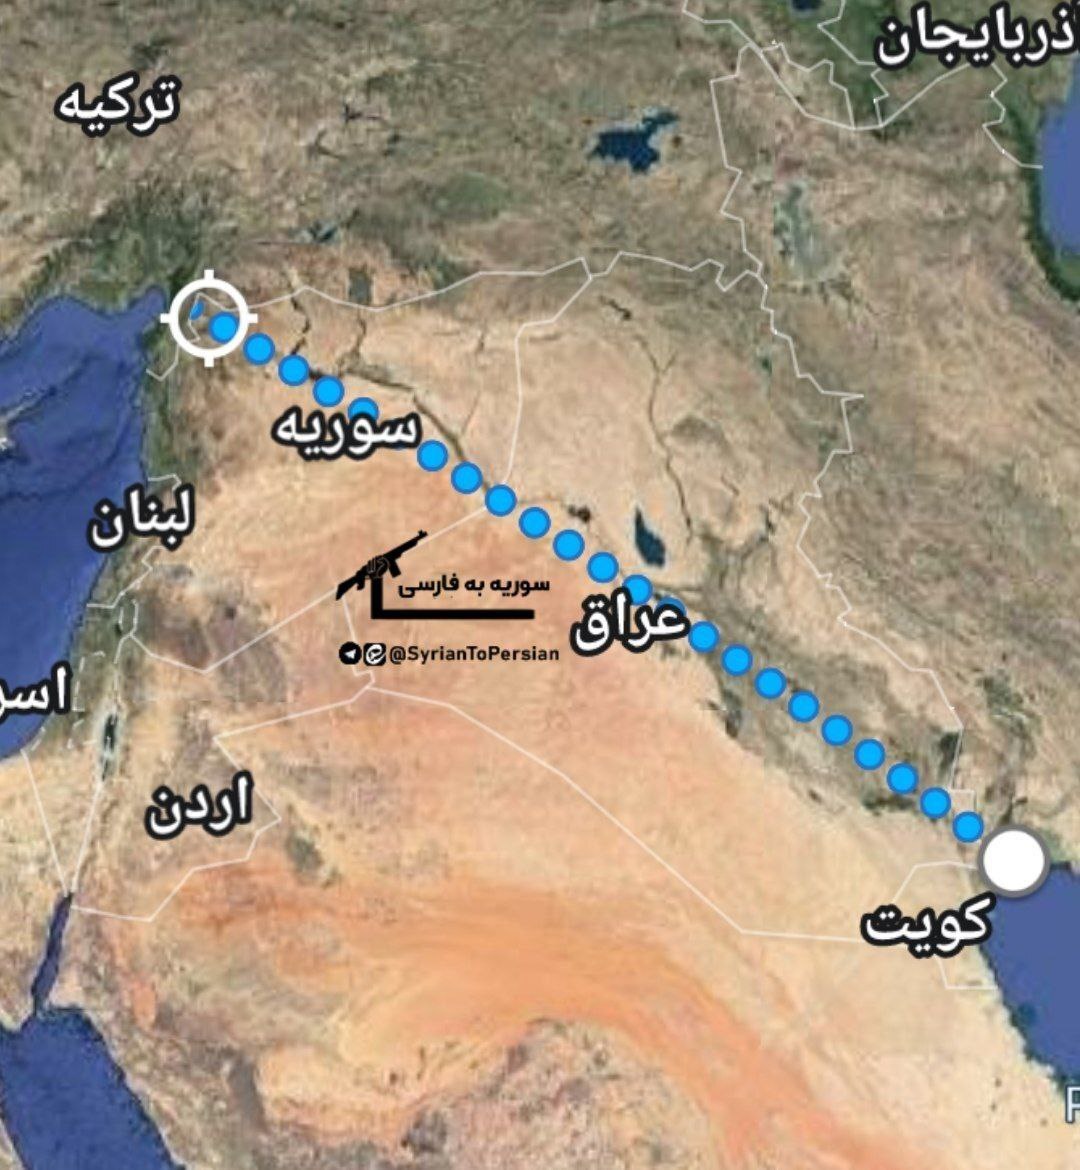 دوربرد ترین عملیات موشکی ایران: 1200 کیلومتر از خوزستان تا مرز اسرائیل (+نقشه)